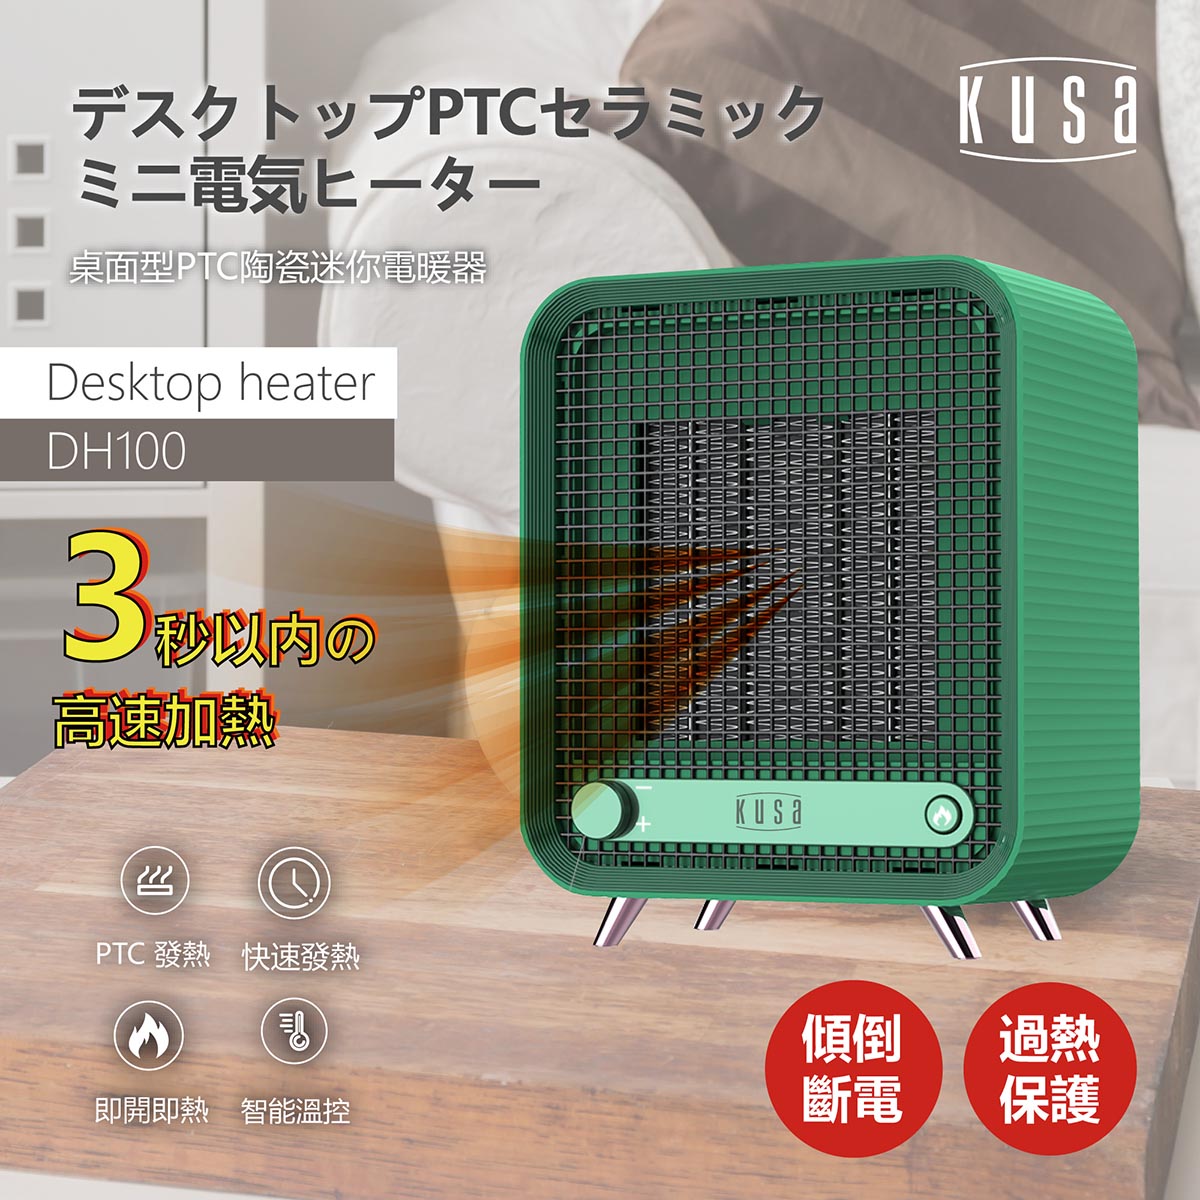 Kusa DH-100 桌面型PTC陶瓷暖風電爐